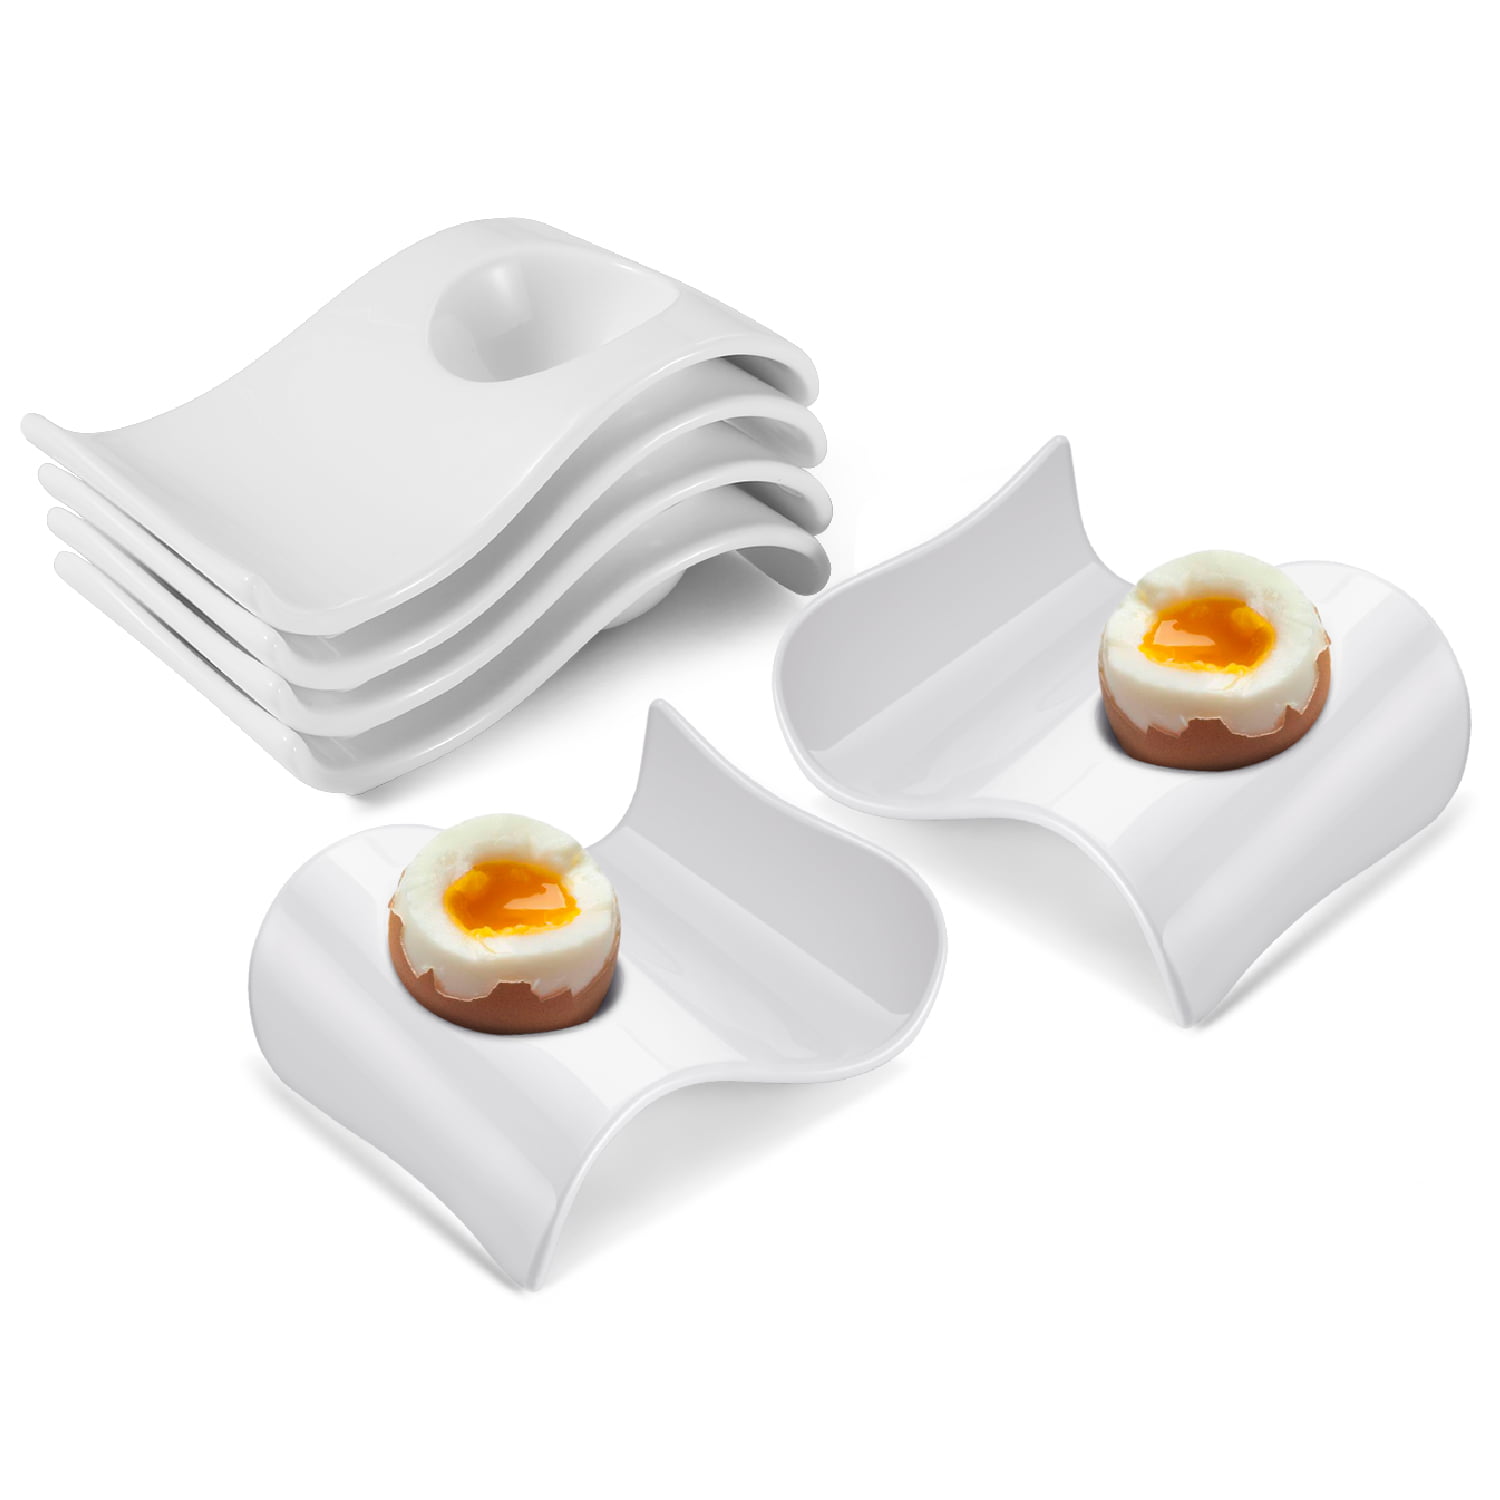  Ceramic Egg Cups Set of 6 Porcelain Egg Stand Holders for Soft  Hard Boiled Eggs for Breakfast (Light blue) : Home & Kitchen